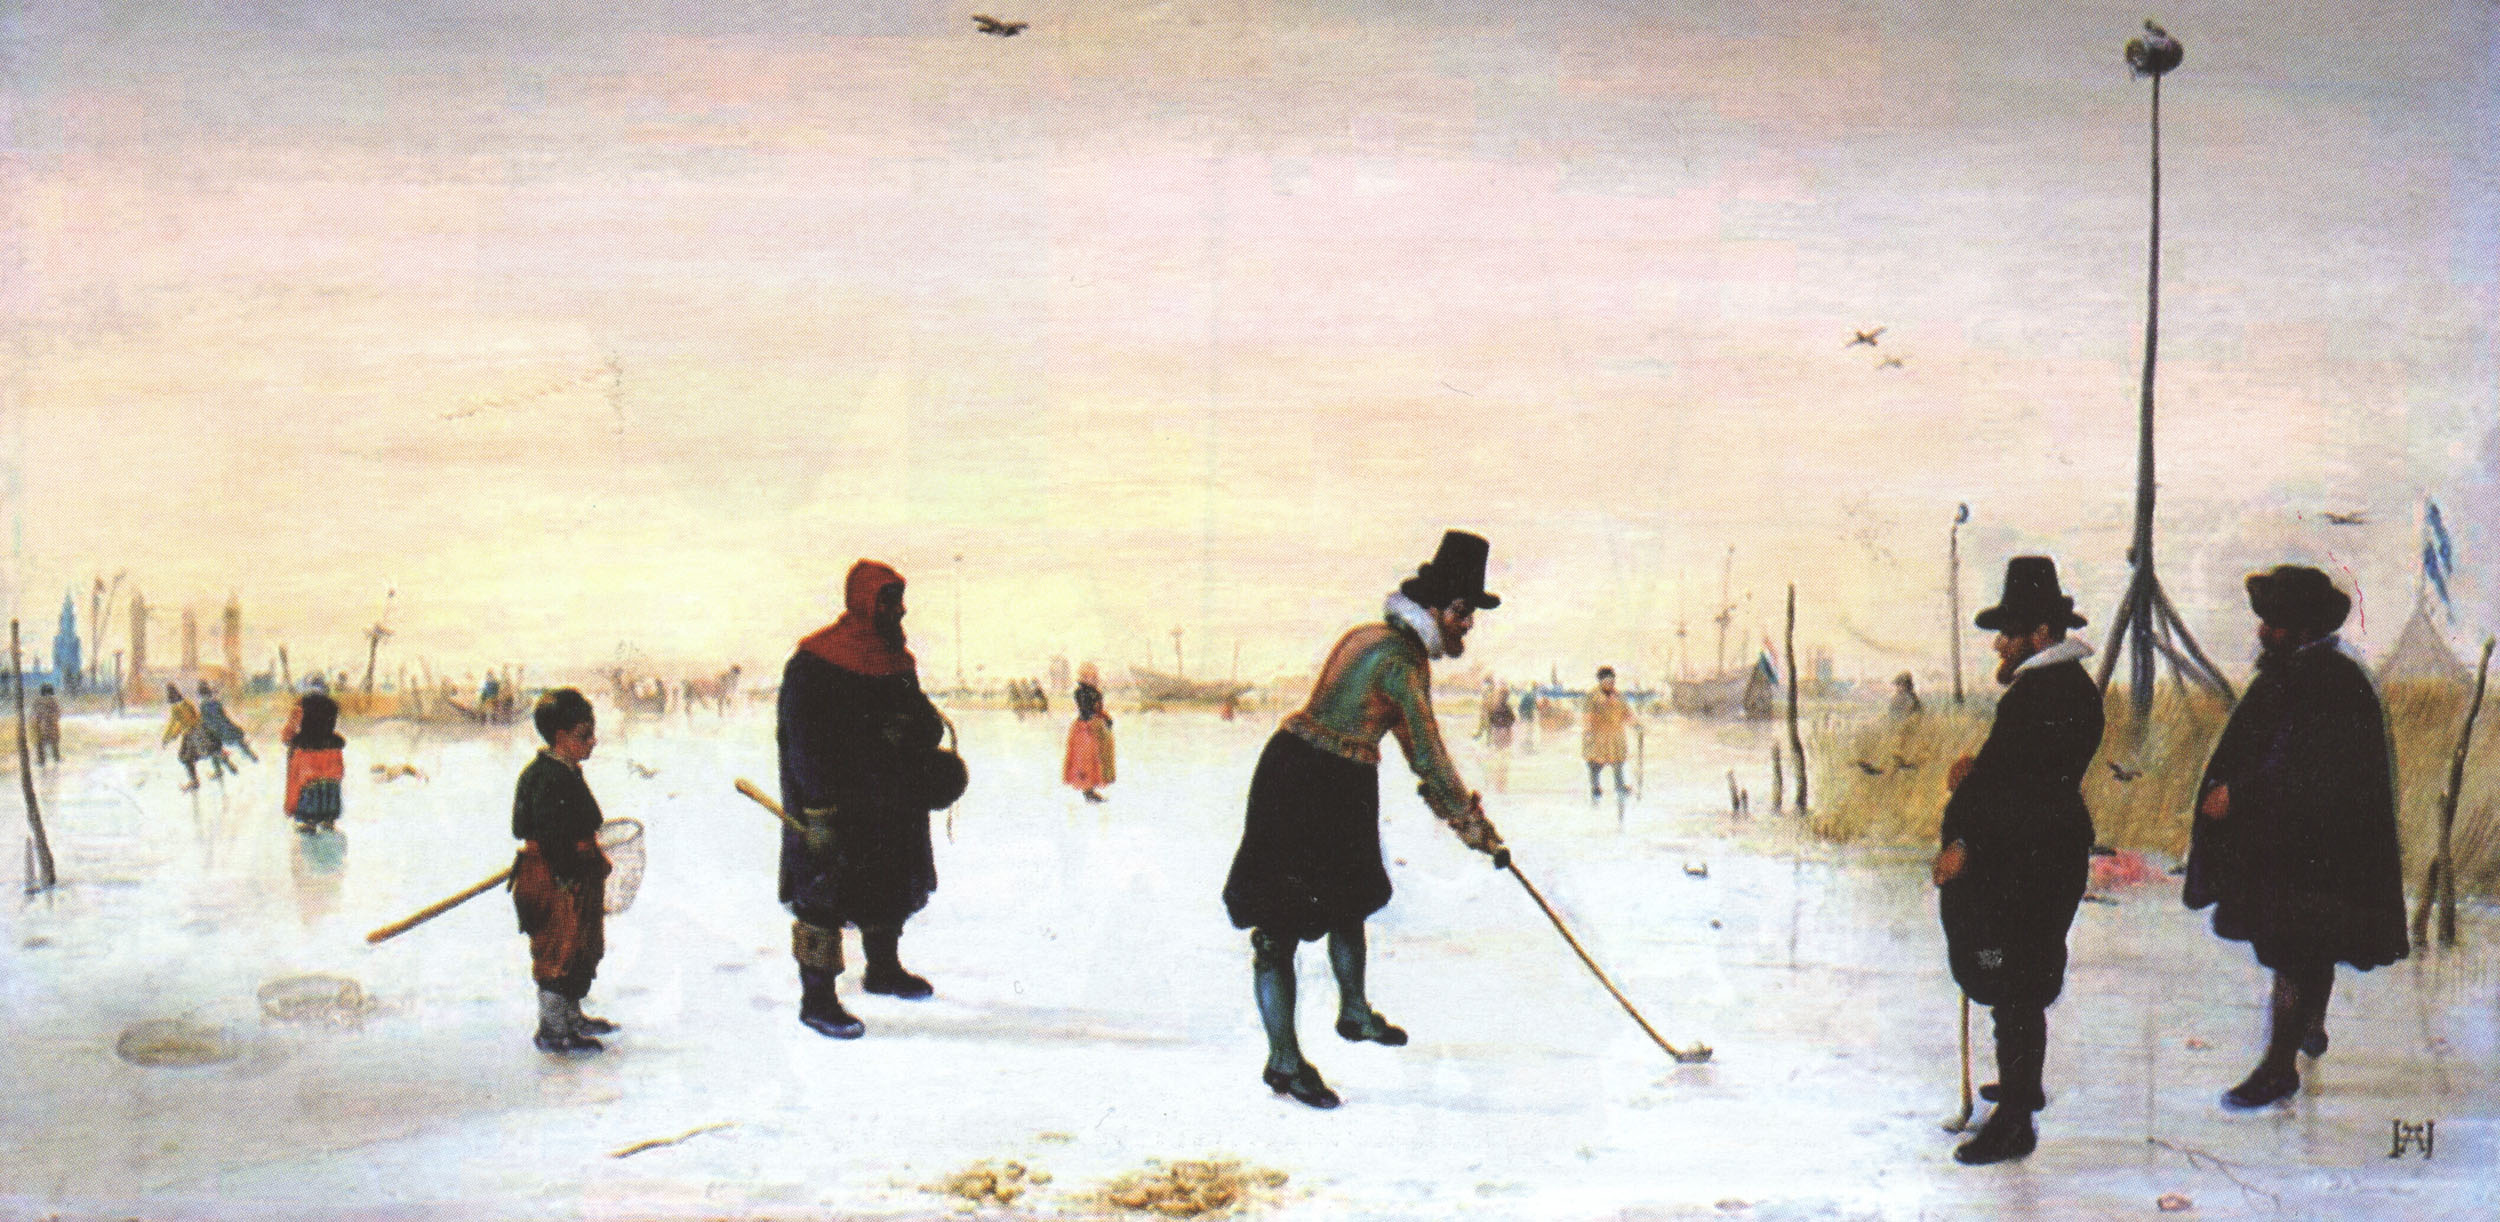 Хендрик ван Аверкамп. Игроки в гольф на льду. 1625.